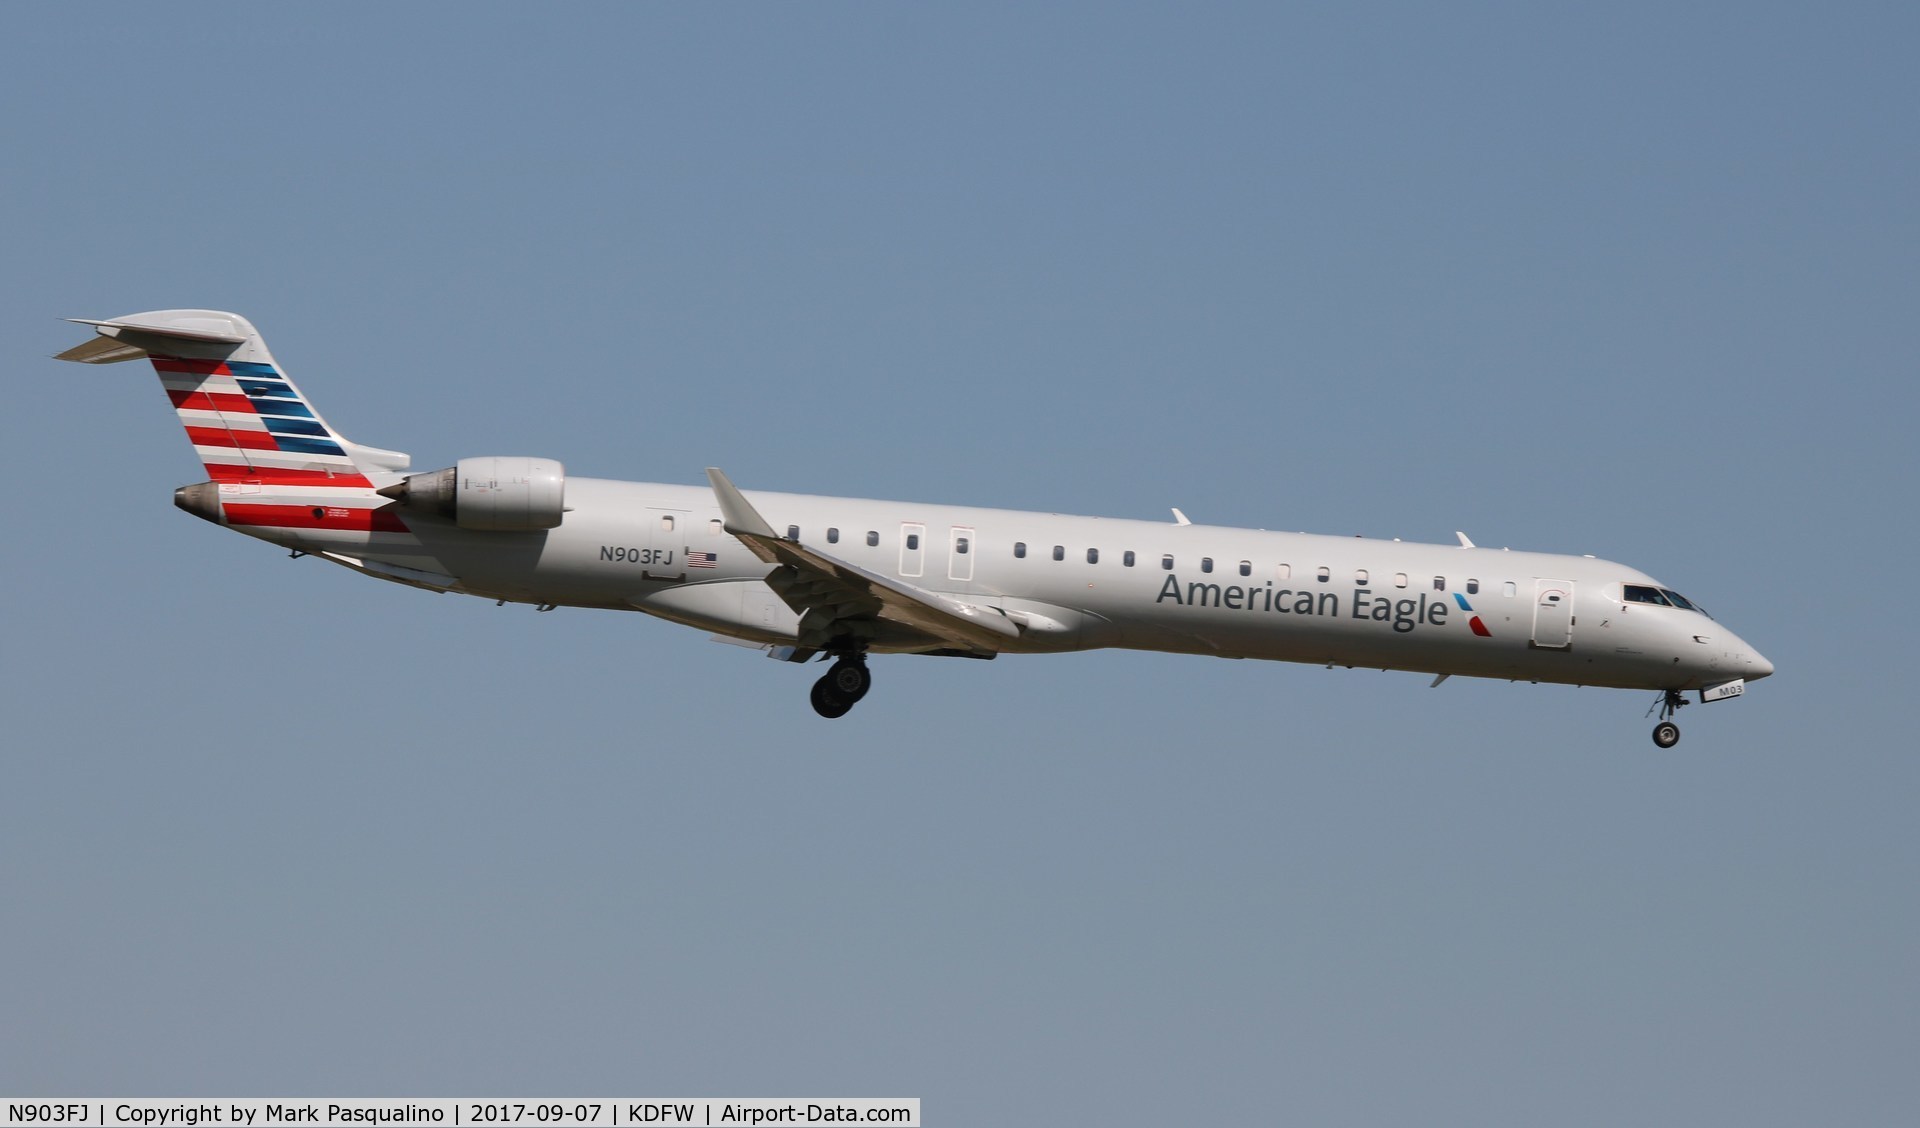 N903FJ, 2003 Bombardier CRJ-900ER (CL-600-2D24) C/N 15003, CL-600-2D24